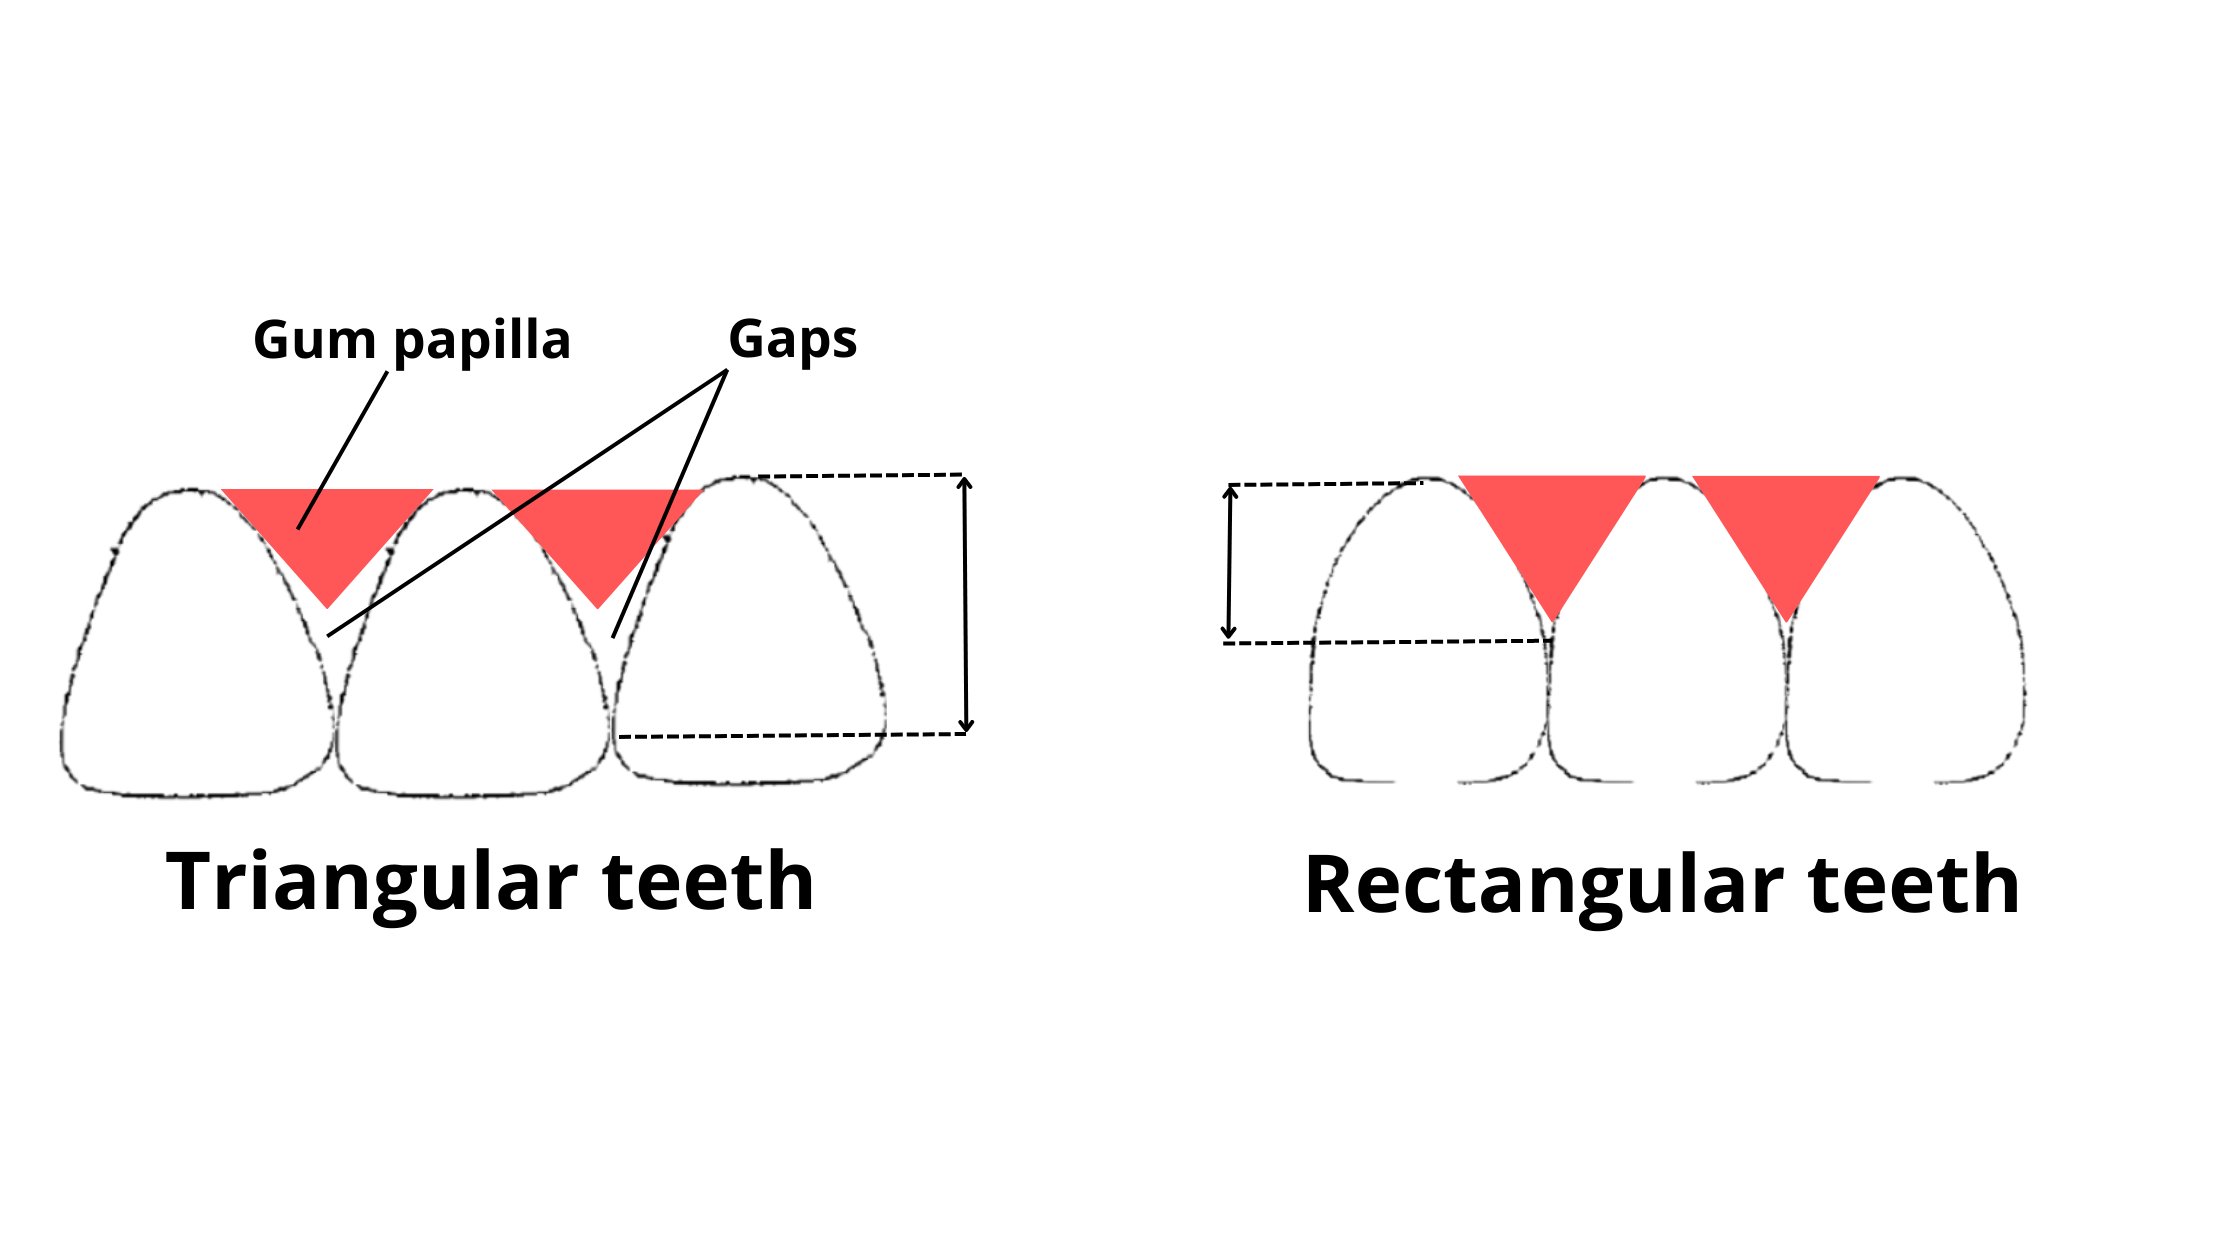 triangular teeth cause more gap too appear than rectangular teeth